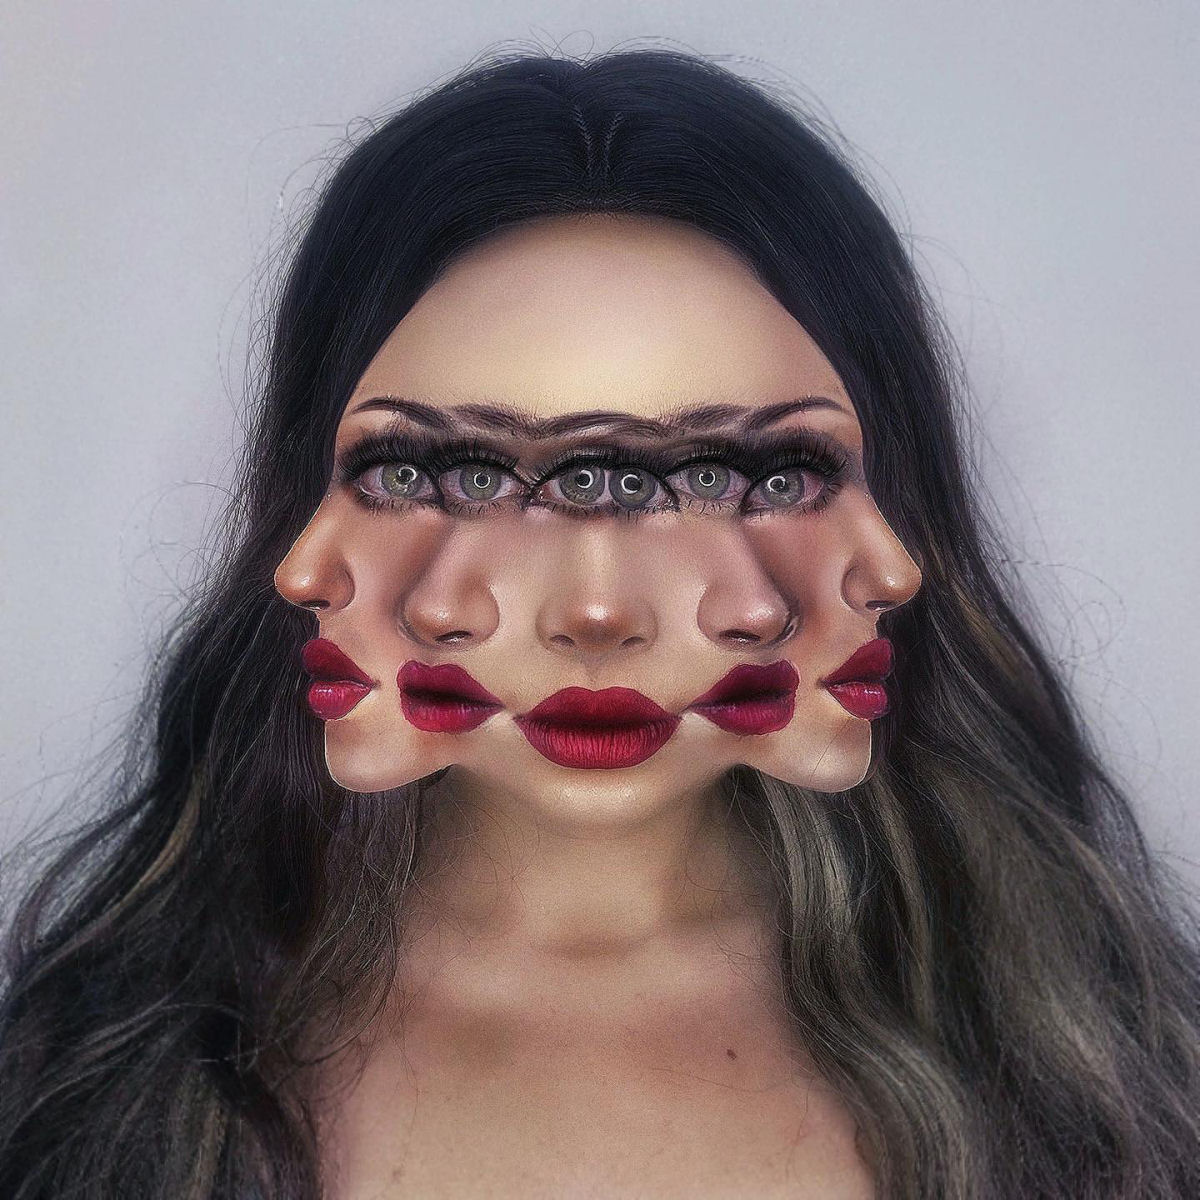 Artista usa seu próprio rosto como tela para ilusões surrealistas 01